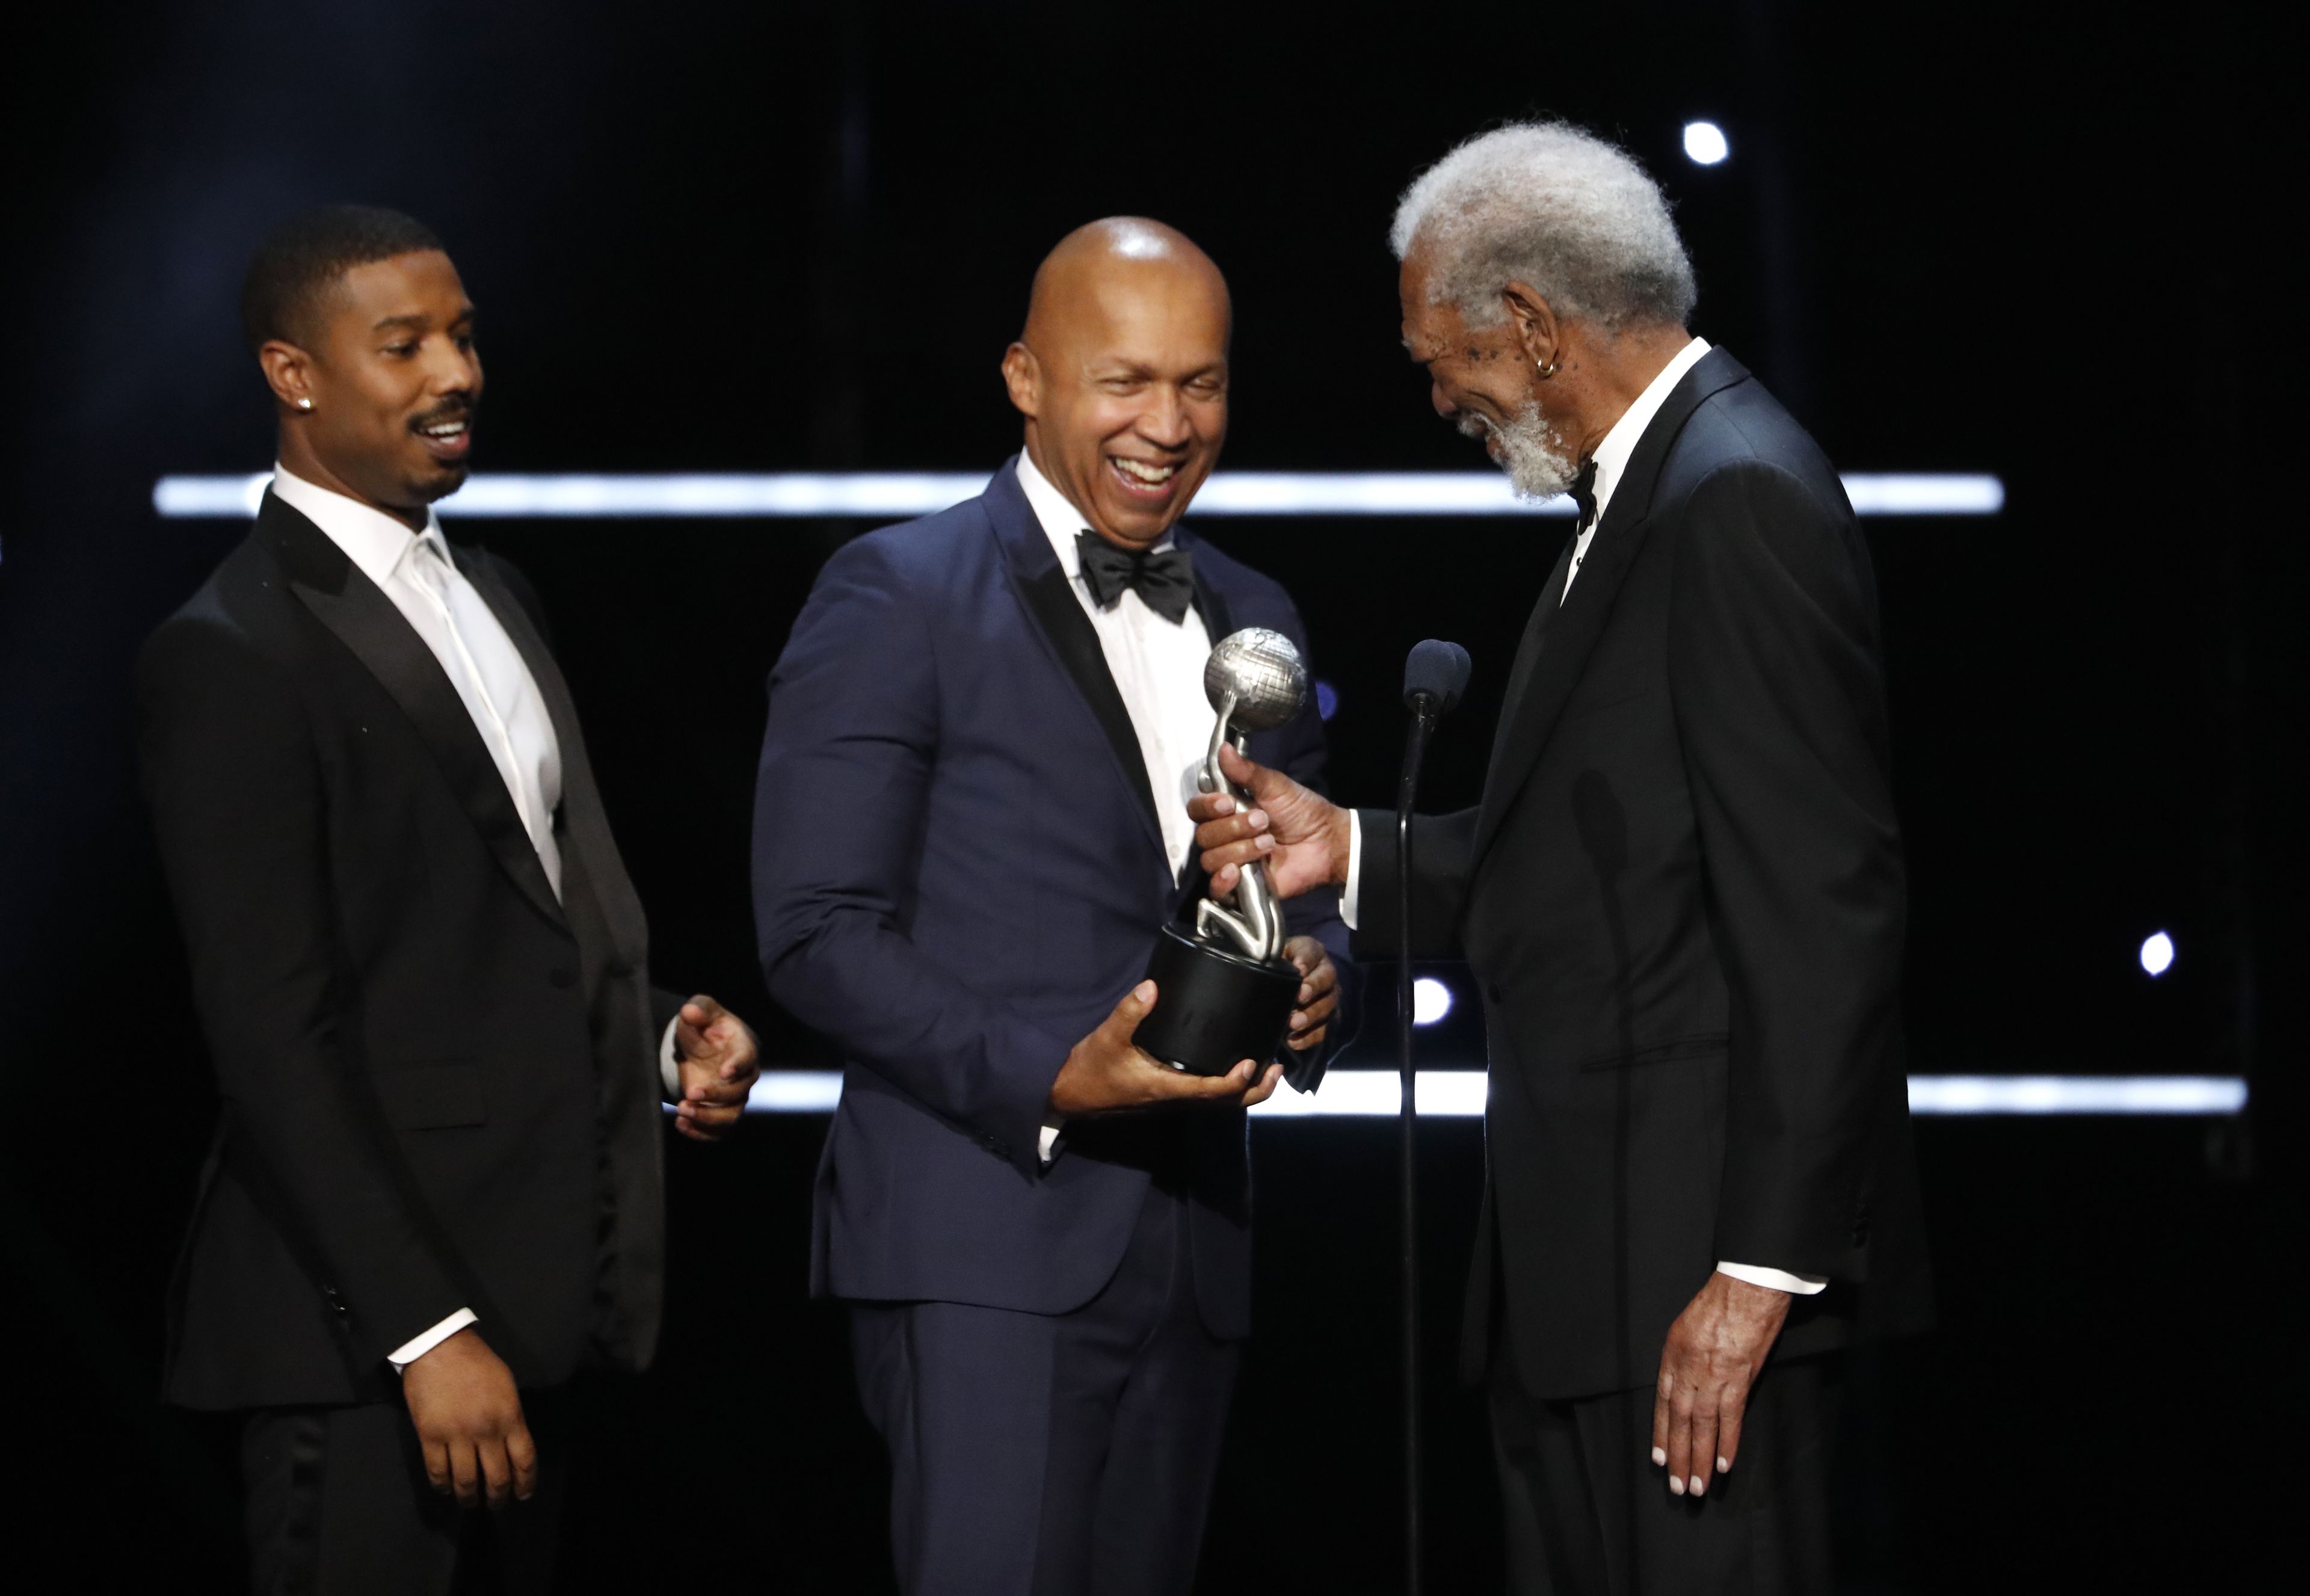 Bryan Stevenson, en el centro, recoge un premio de manos de Morgan Freeman, acompañado por Michael B. Jordan.